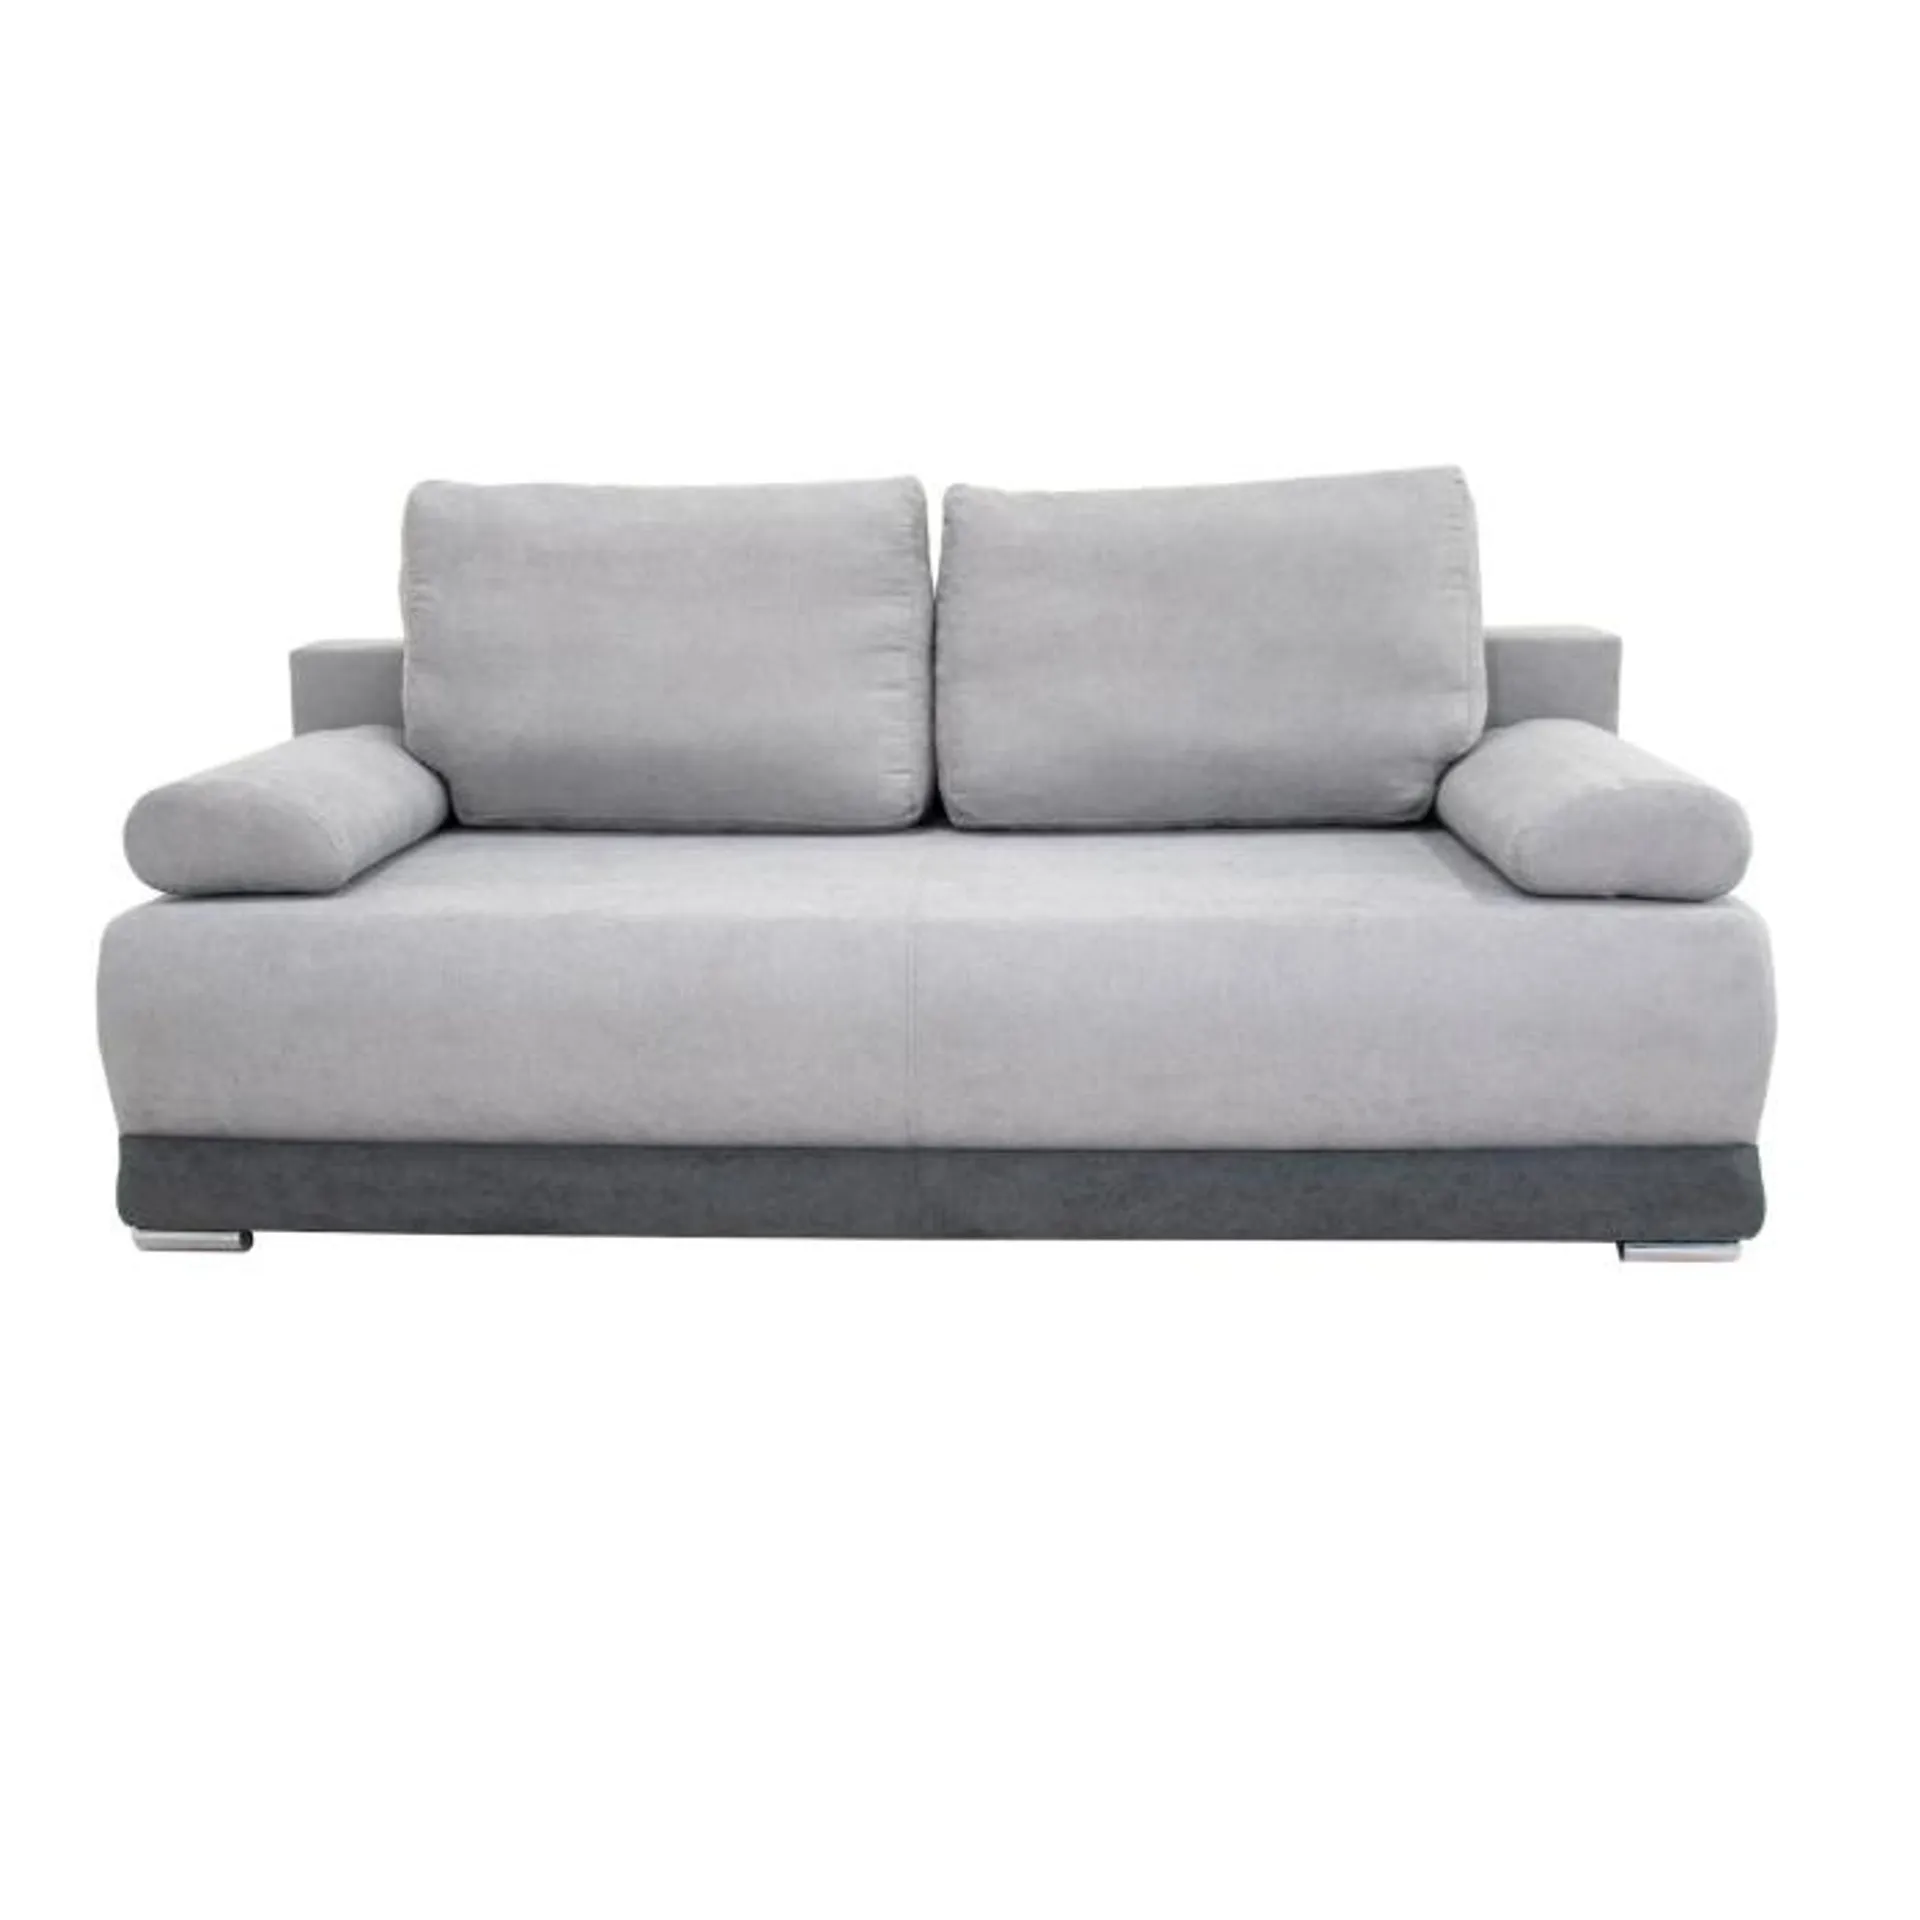 Sofa rozkładana KXTR jasnoszara 202x99 cm